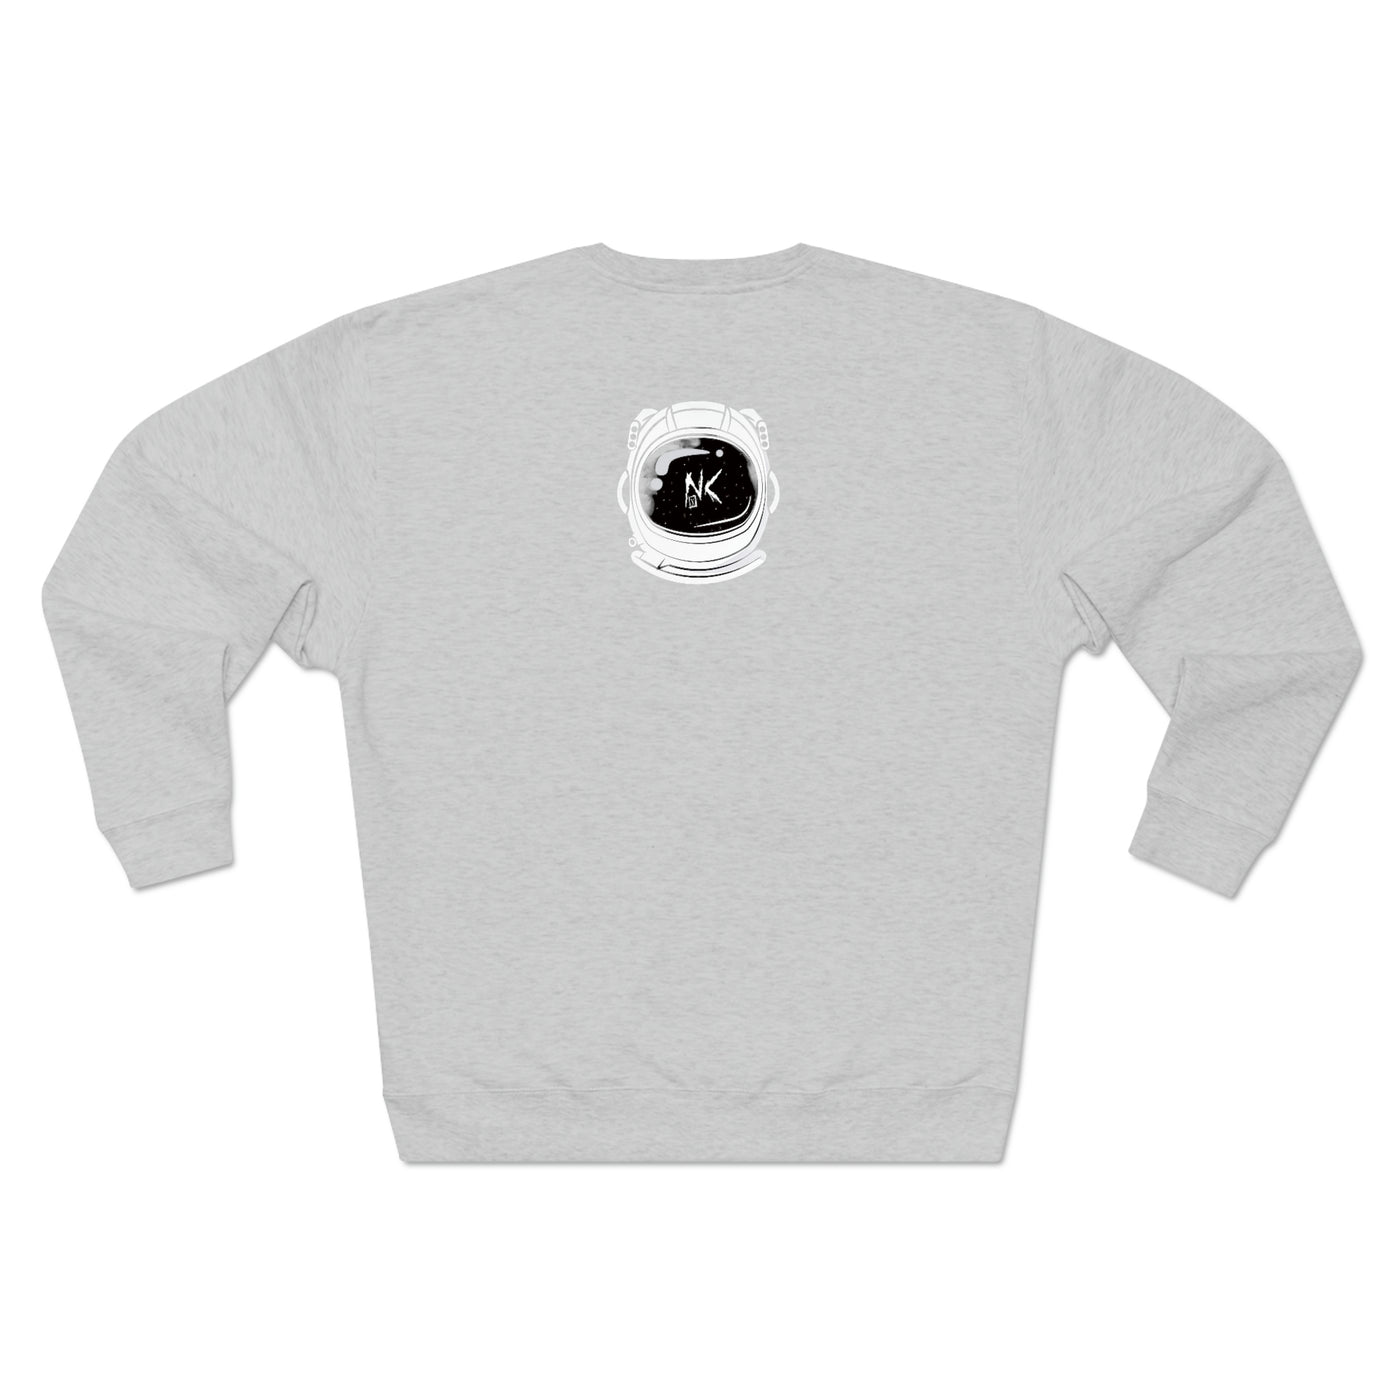 "Noceilings Premium Crewneck Sweatshirt - NoCeilingsClothing